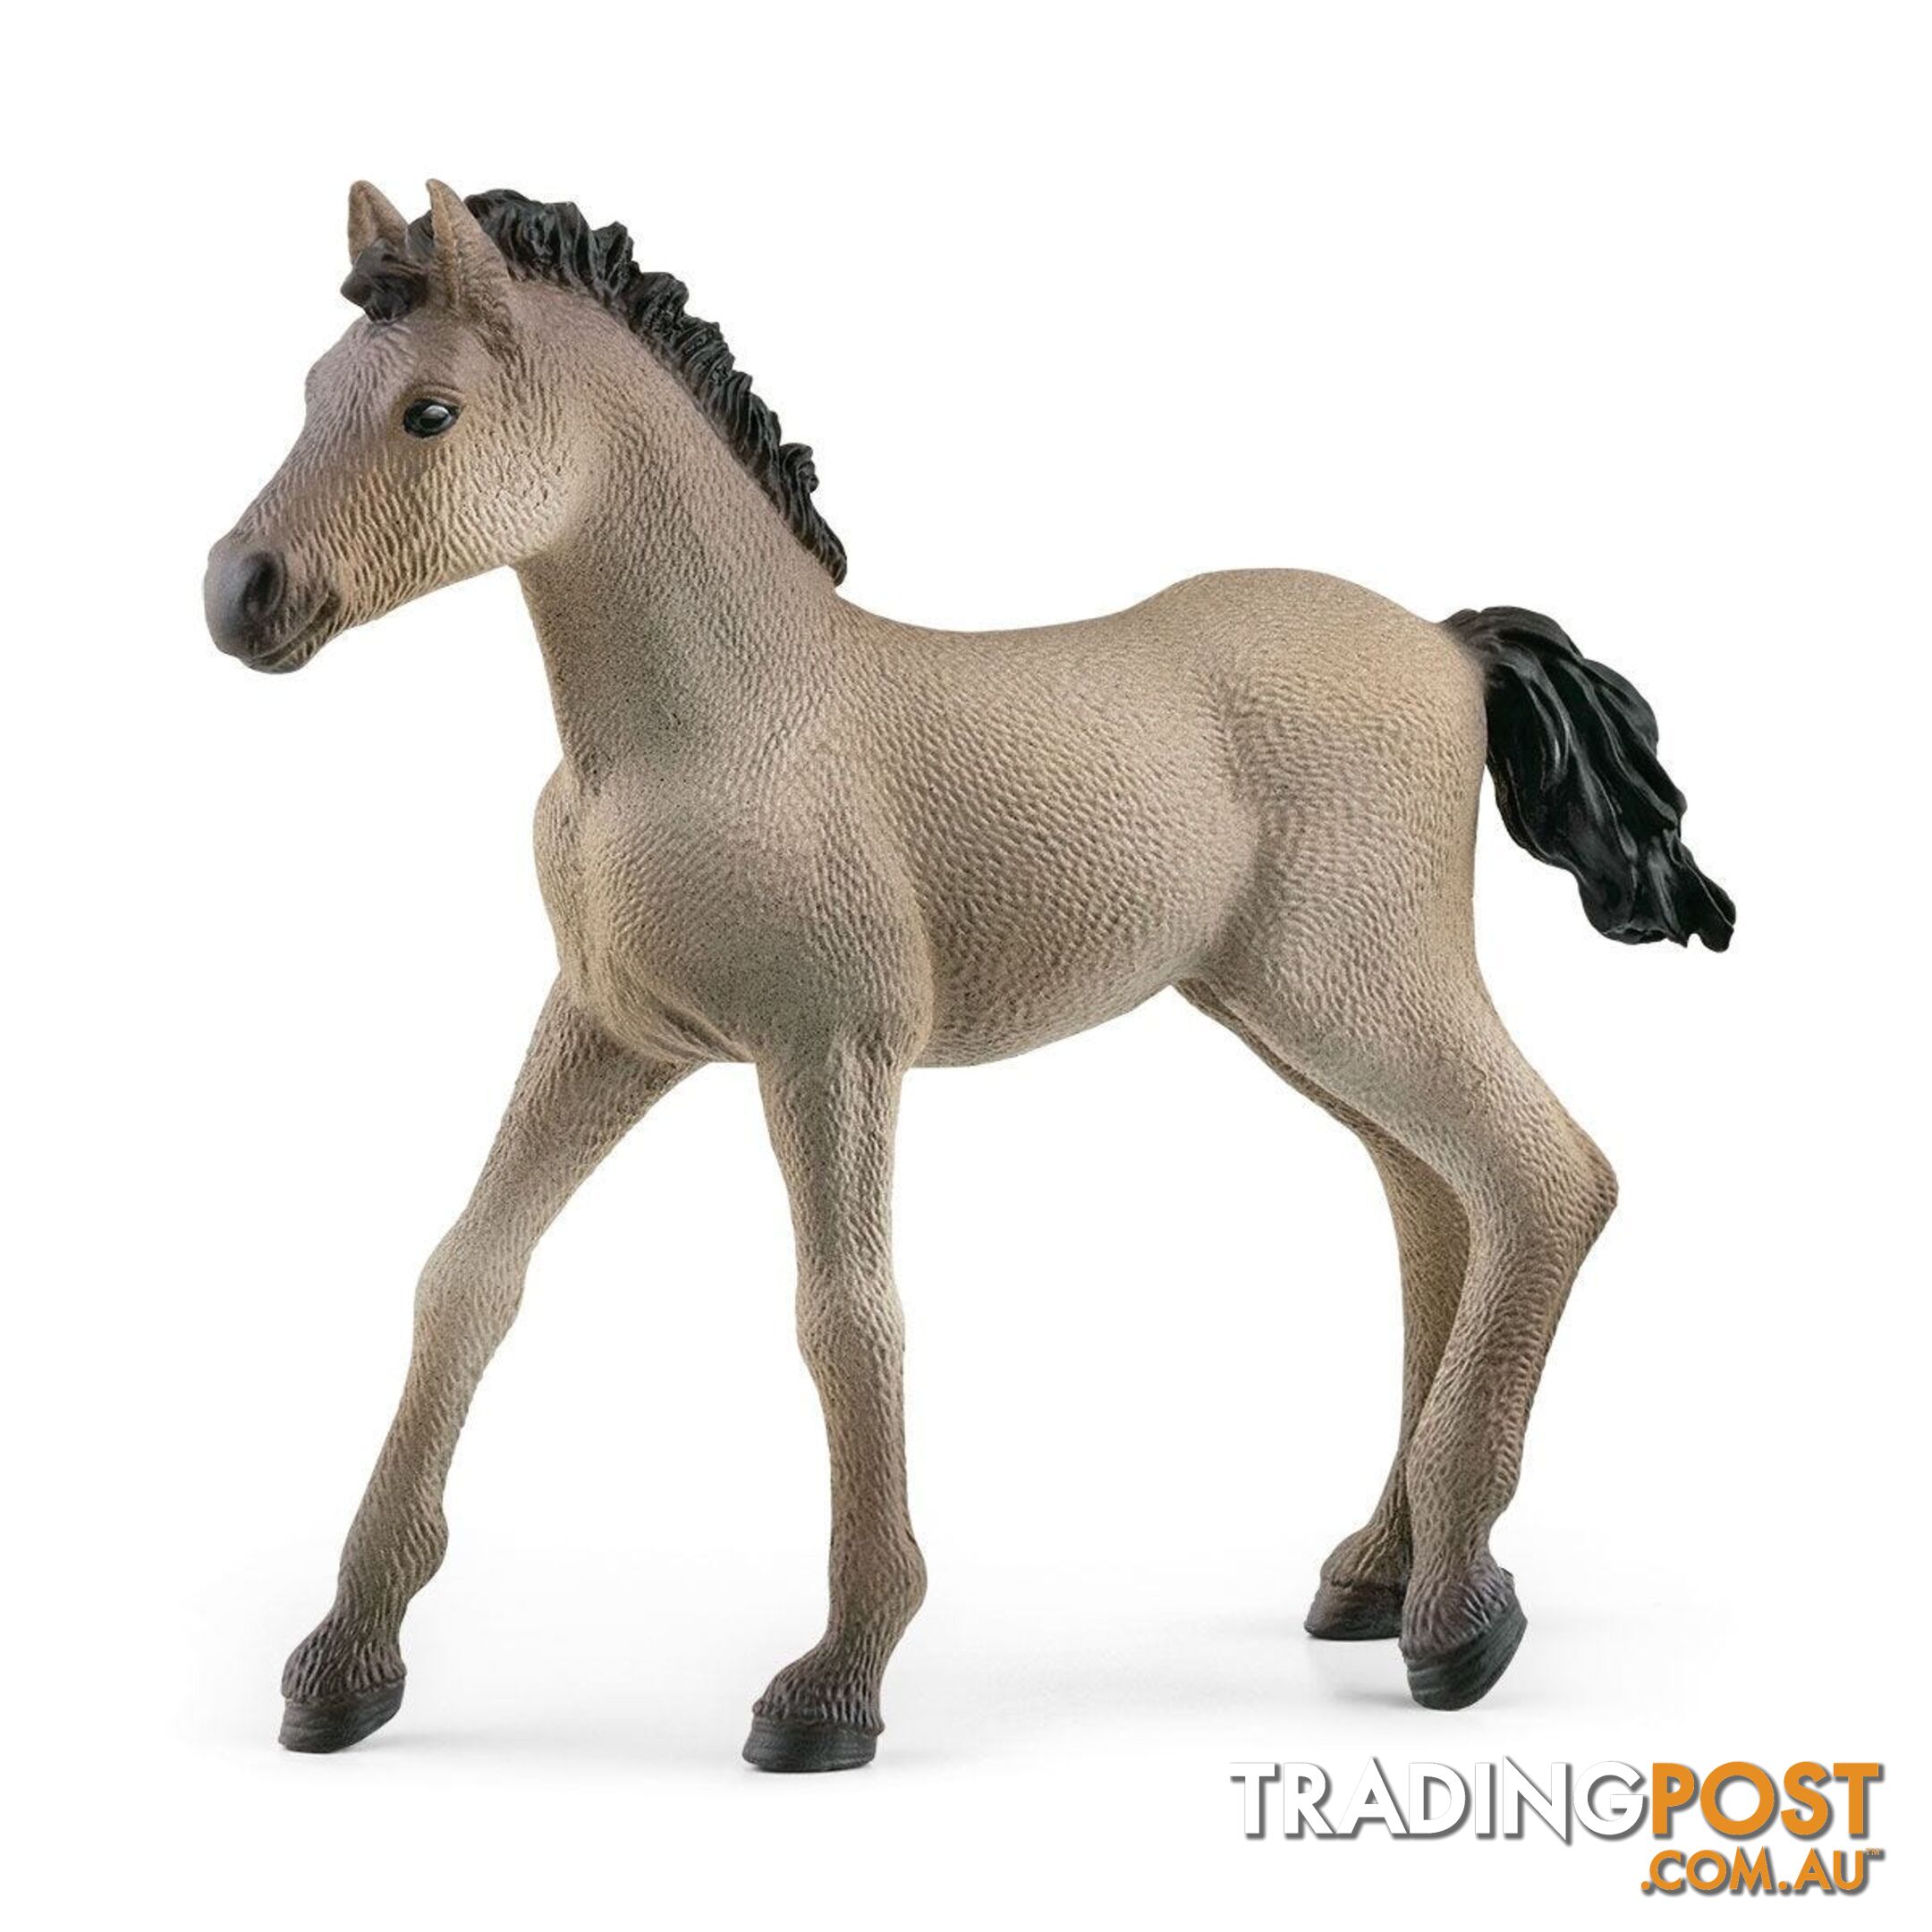 Schleich - Criollo Definitivo Foal Figurine - Mdsc13949 - 4059433486673